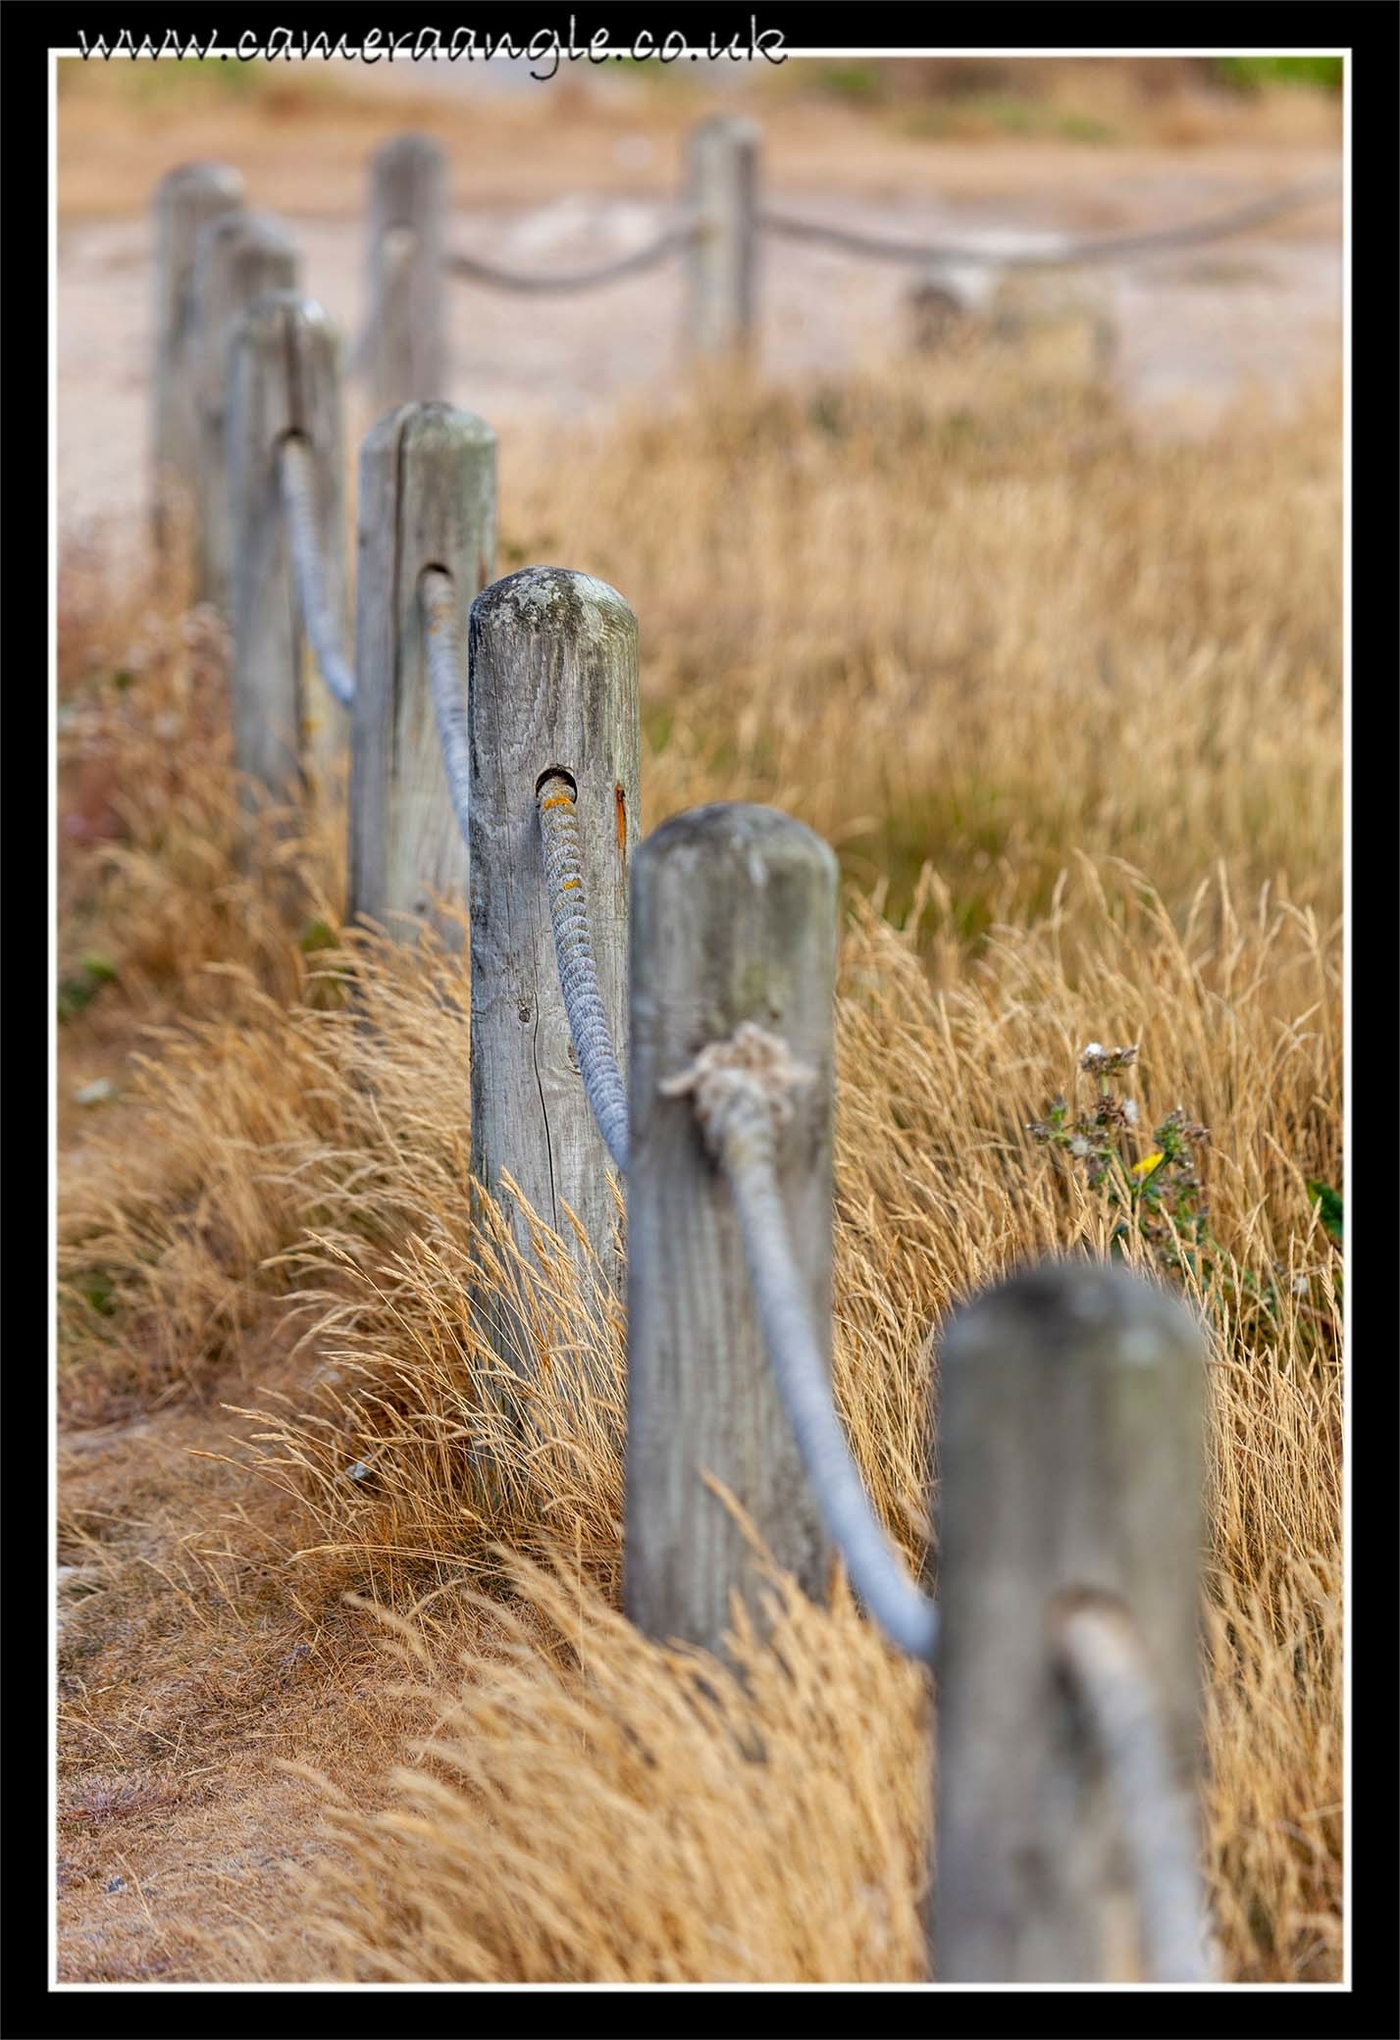 Fence
Keywords: Portland Bill Fence